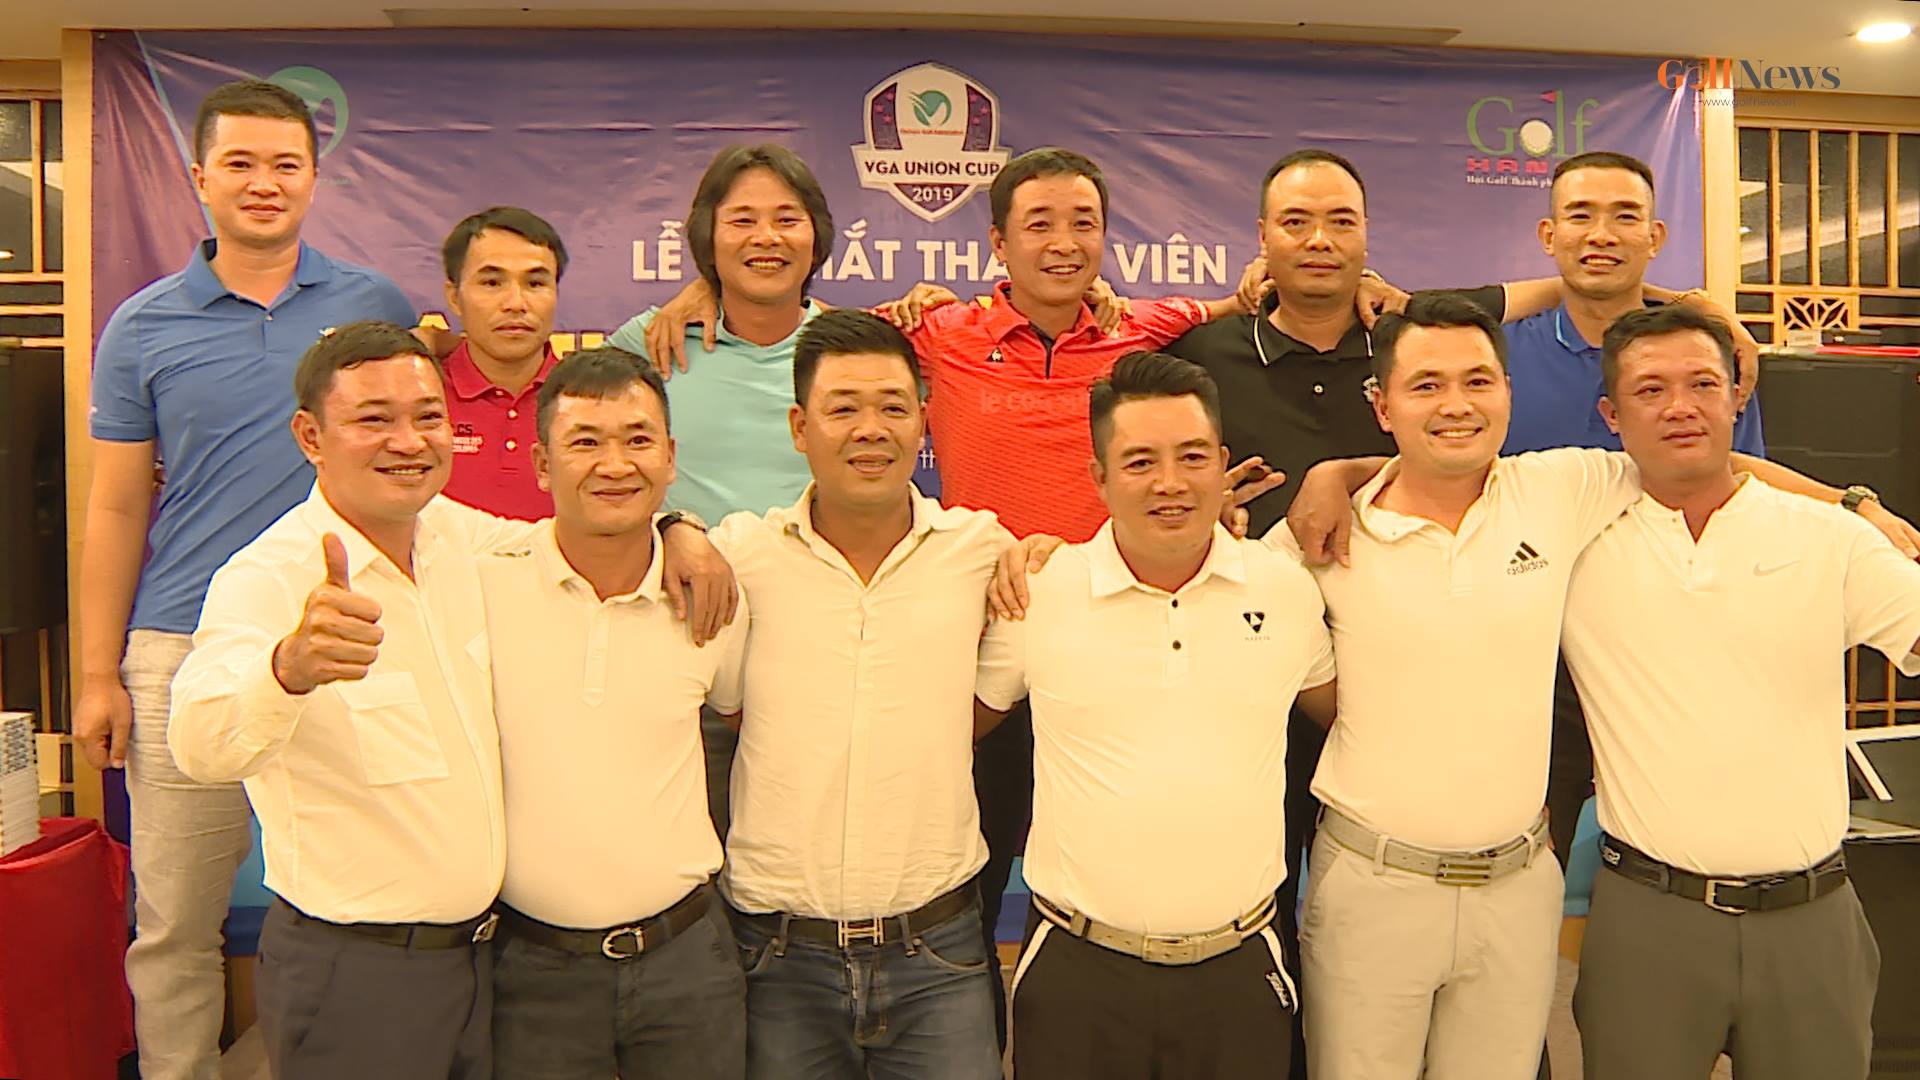 Công bố 14 thành viên của tuyển Miền Bắc tham dự giải Union Cup 2019